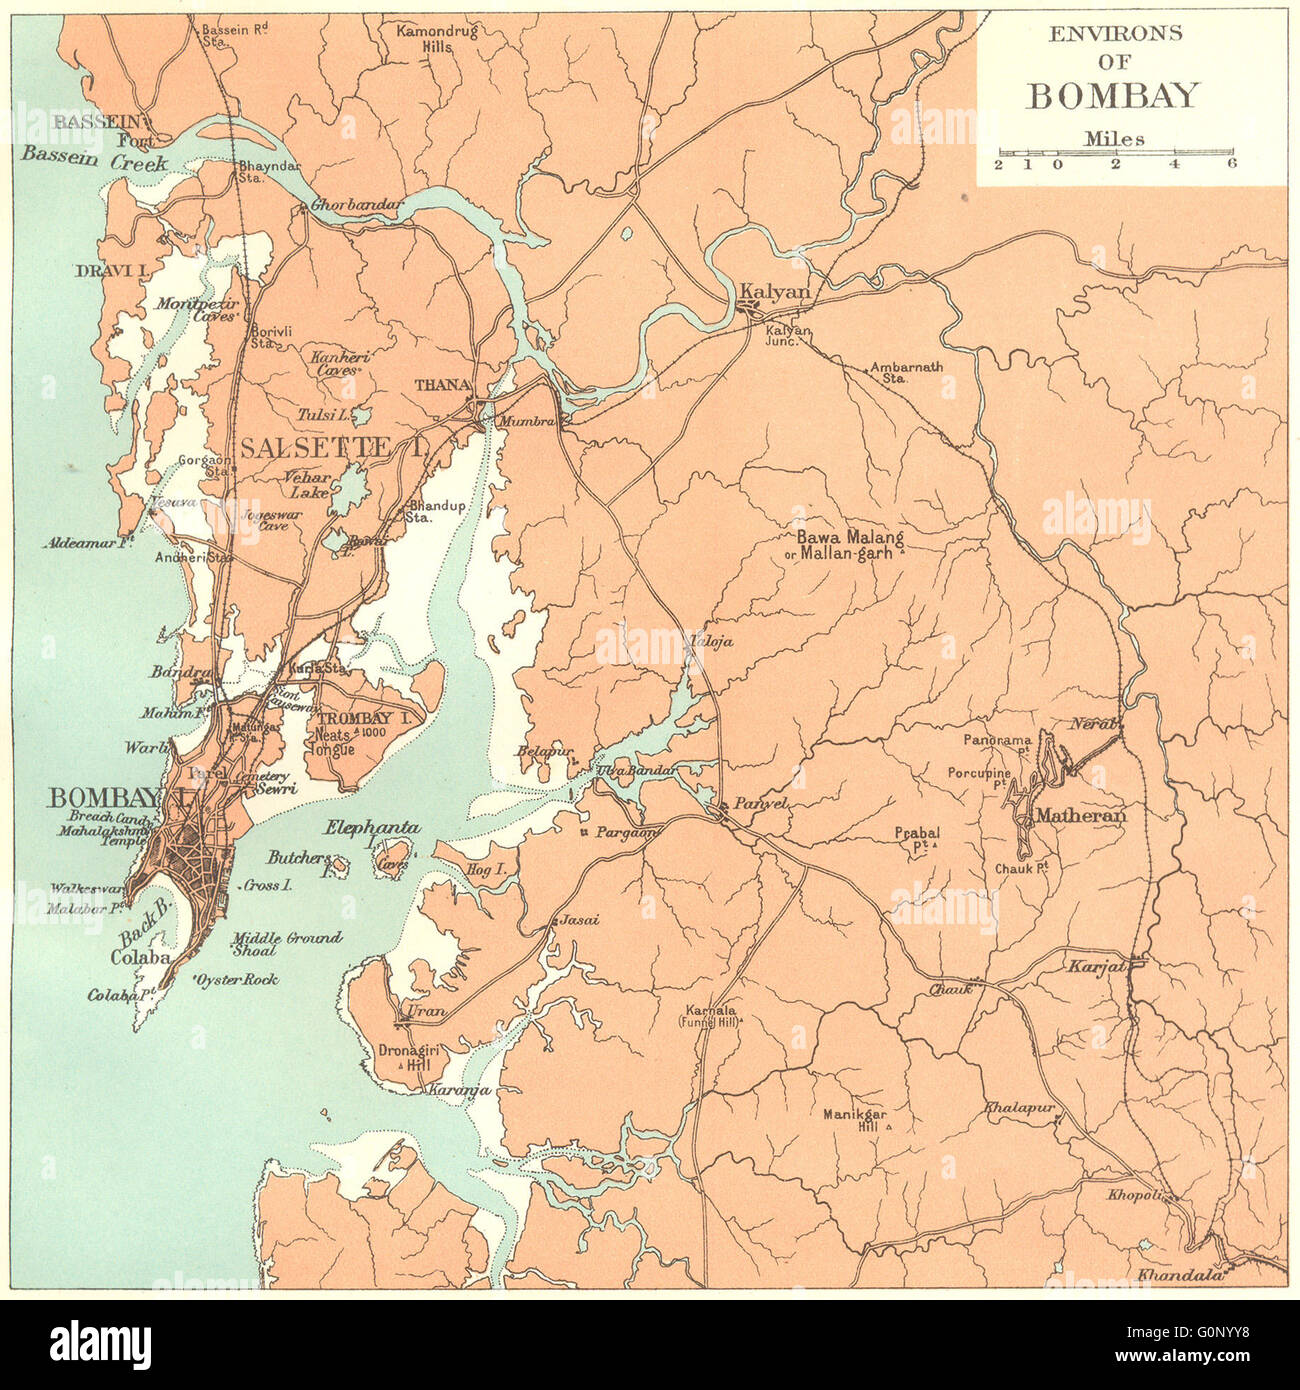 Inde : Bombay (Mumbai) environs. L'État du Maharashtra. Salsette Matheran Kalyan, 1924 map Banque D'Images